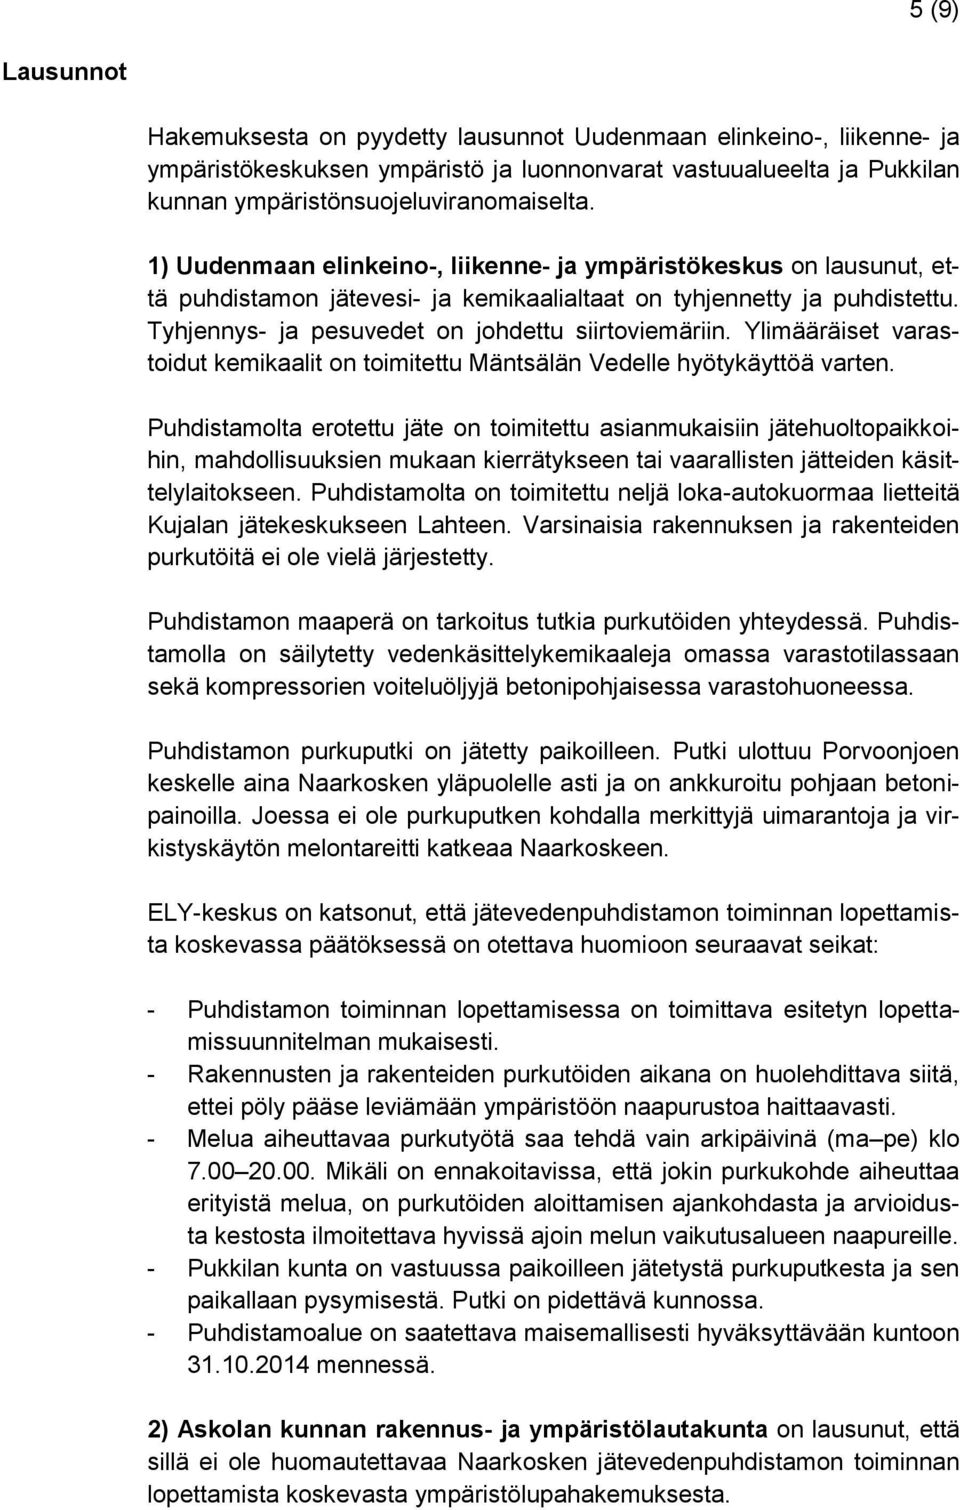 Ylimääräiset varastoidut kemikaalit on toimitettu Mäntsälän Vedelle hyötykäyttöä varten.